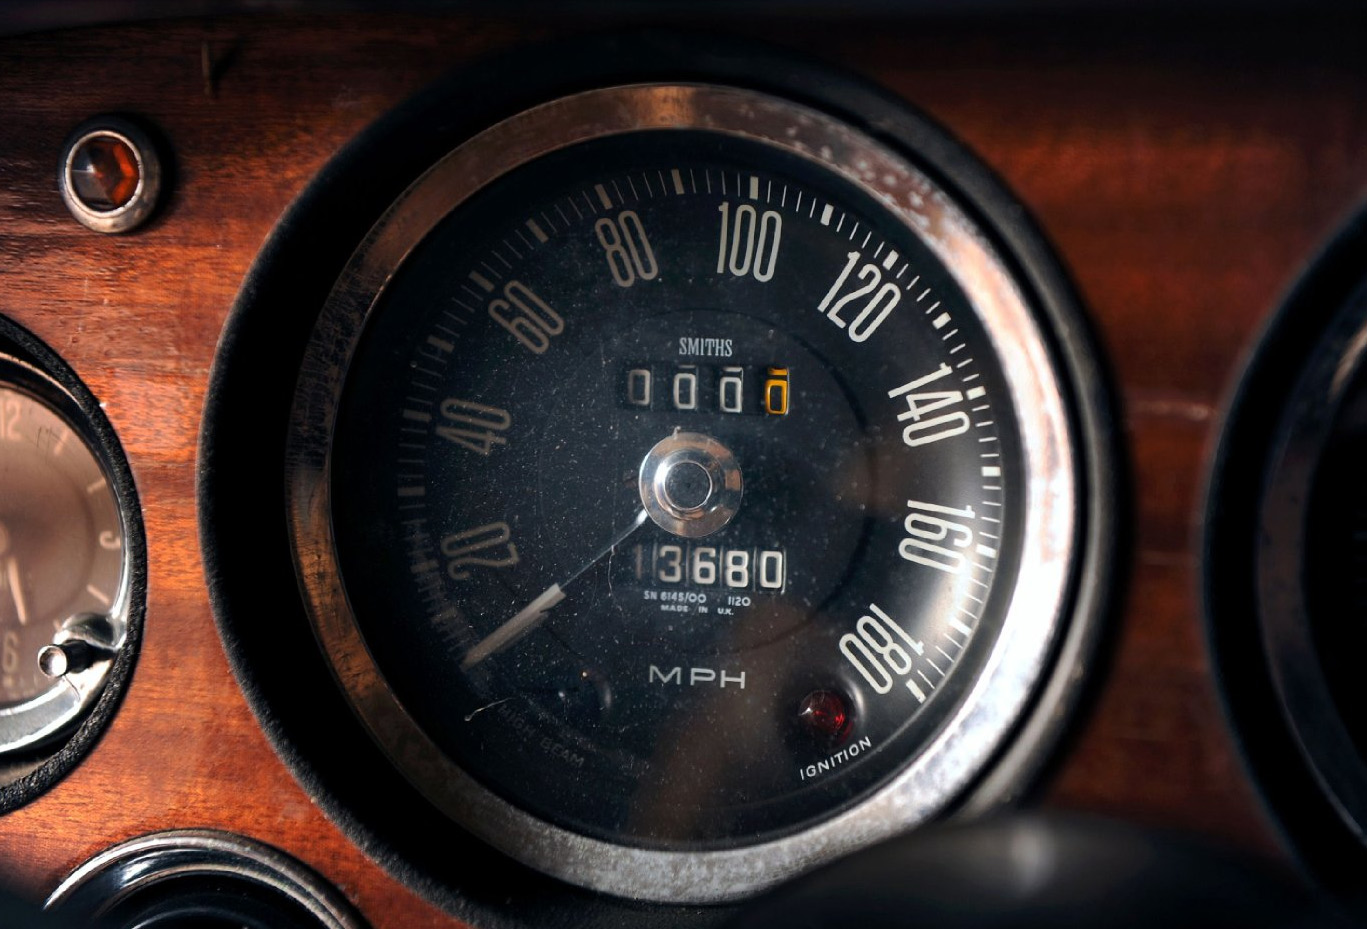 1966 Aston Martin DBSC Coupé